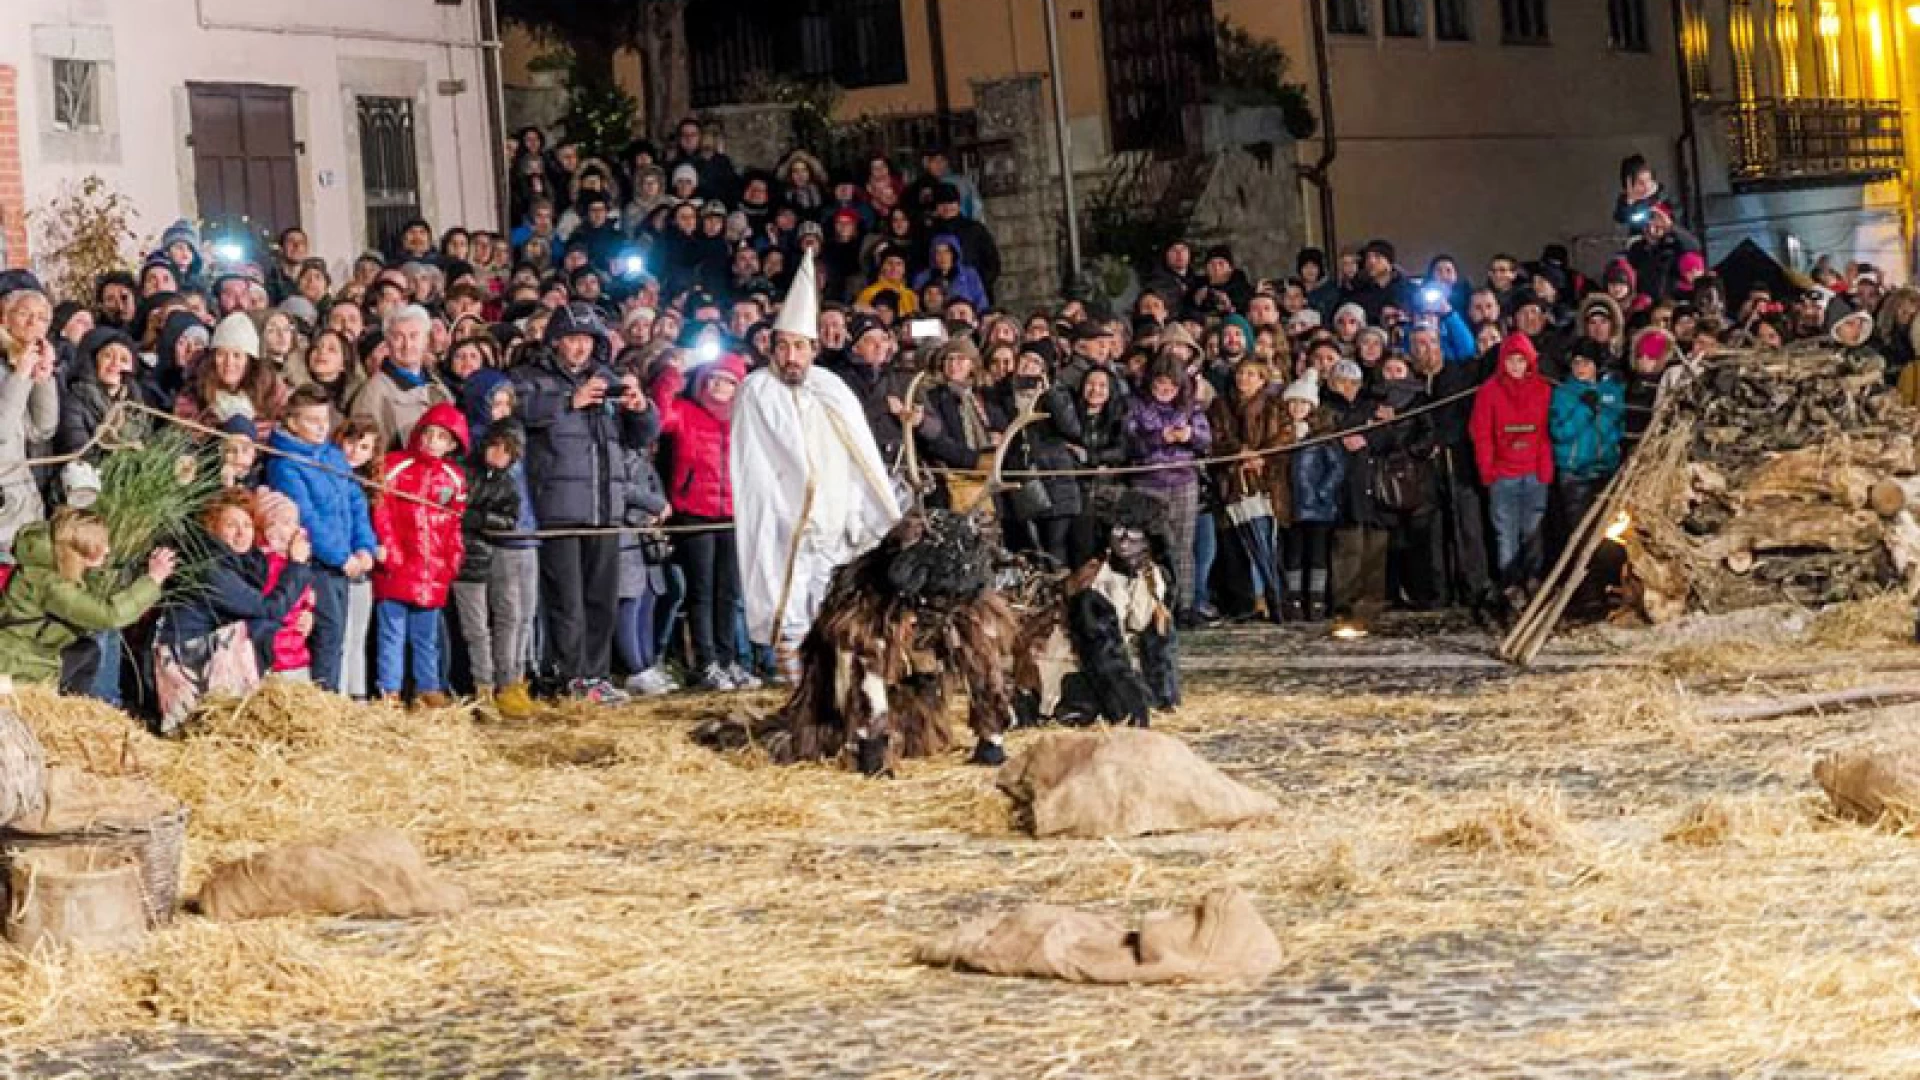 Castelnuovo al Volturno: la pantomima dell’Uomo Cervo torna a scaldare i cuori della Valle del Volturno. Appuntamento a domenica 26 febbraio 2017.